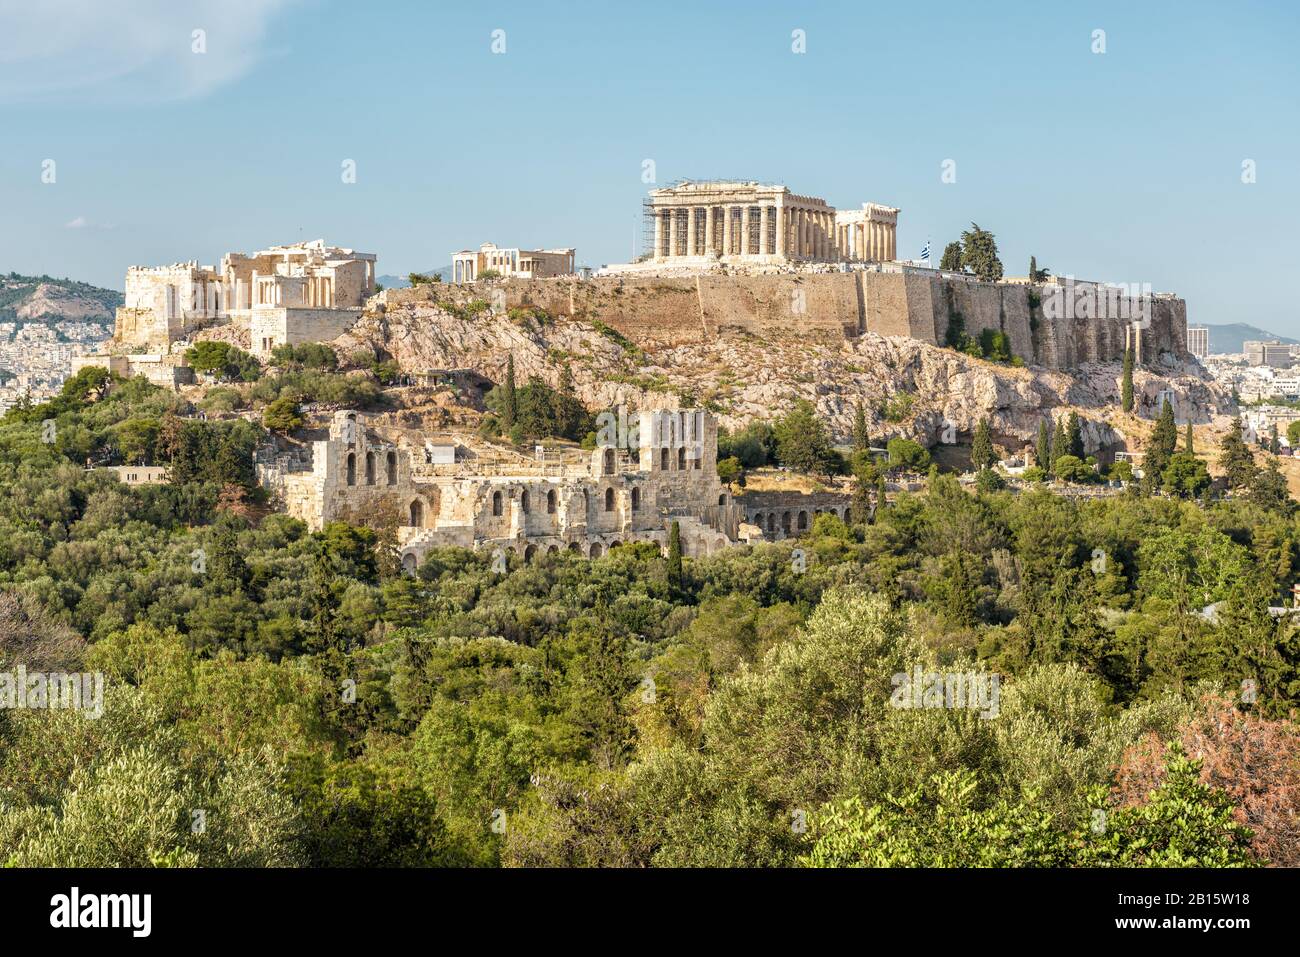 Panorama der Akropolis, Athen, Griechenland. Der altgriechische Parthenon auf dem Akropolishügel ist das wichtigste Wahrzeichen Athens. Kulisse der berühmten Ruinen i. Stockfoto